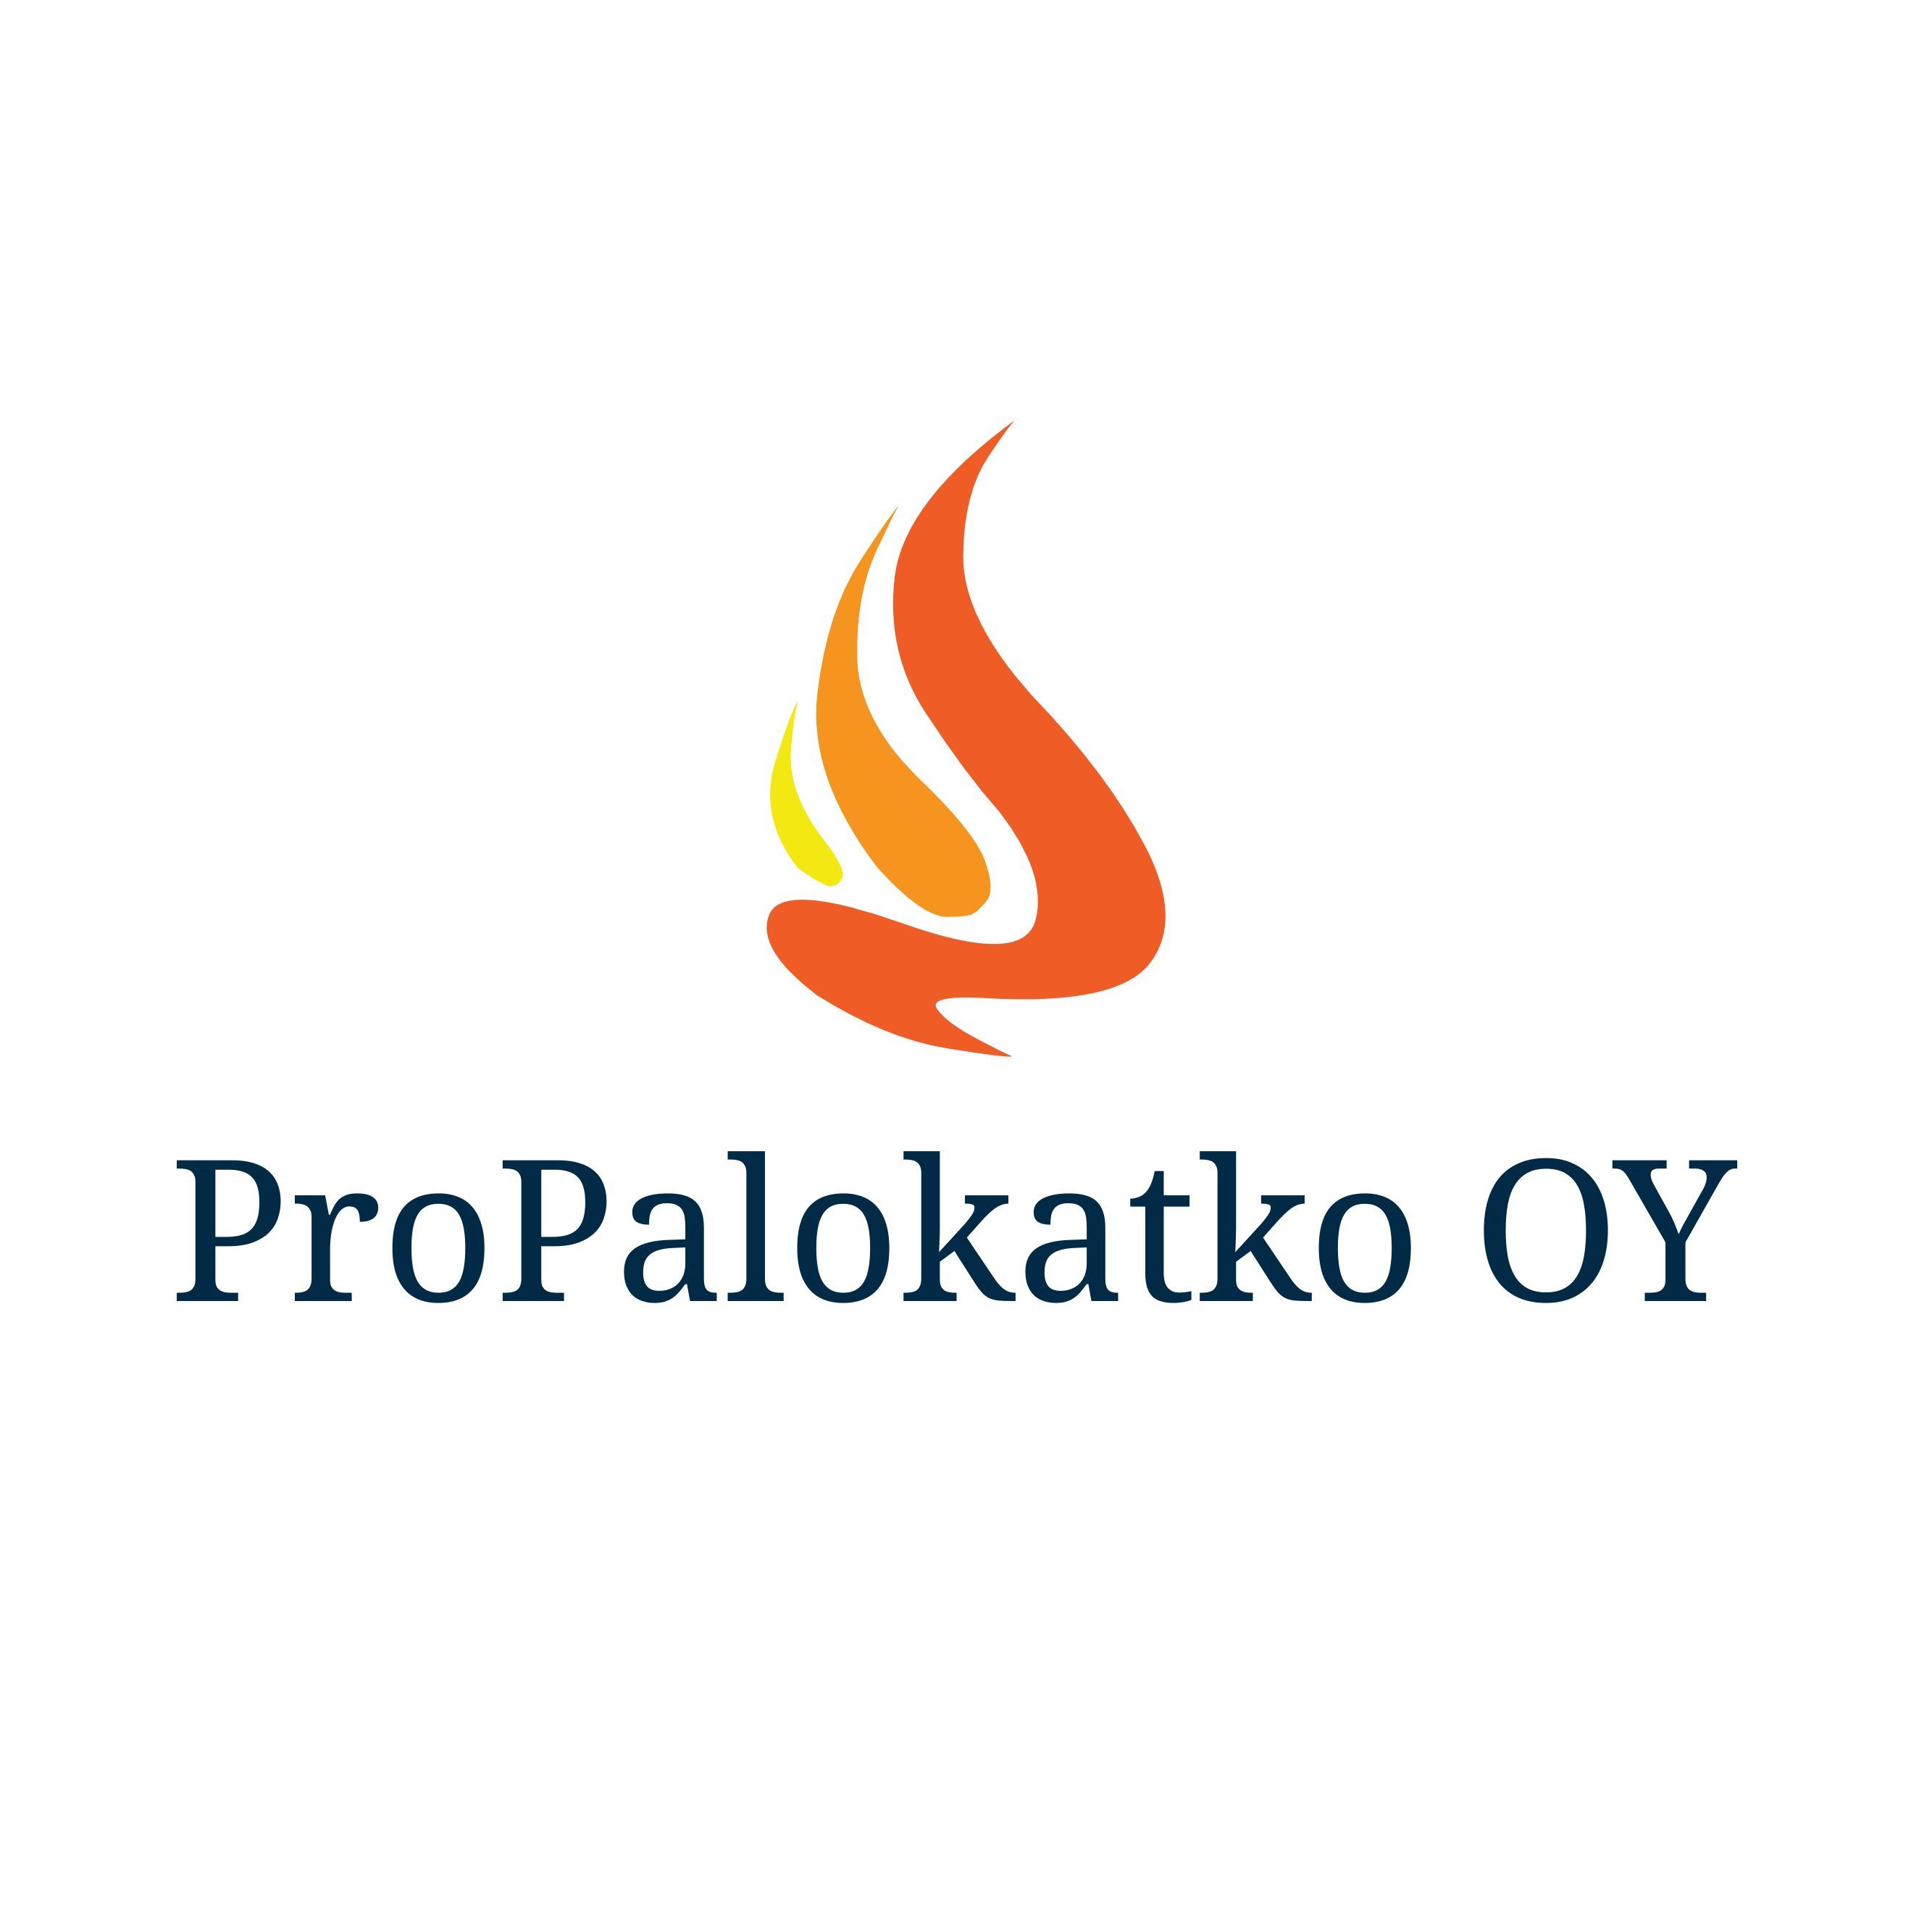 Propalokatko Oy Logo